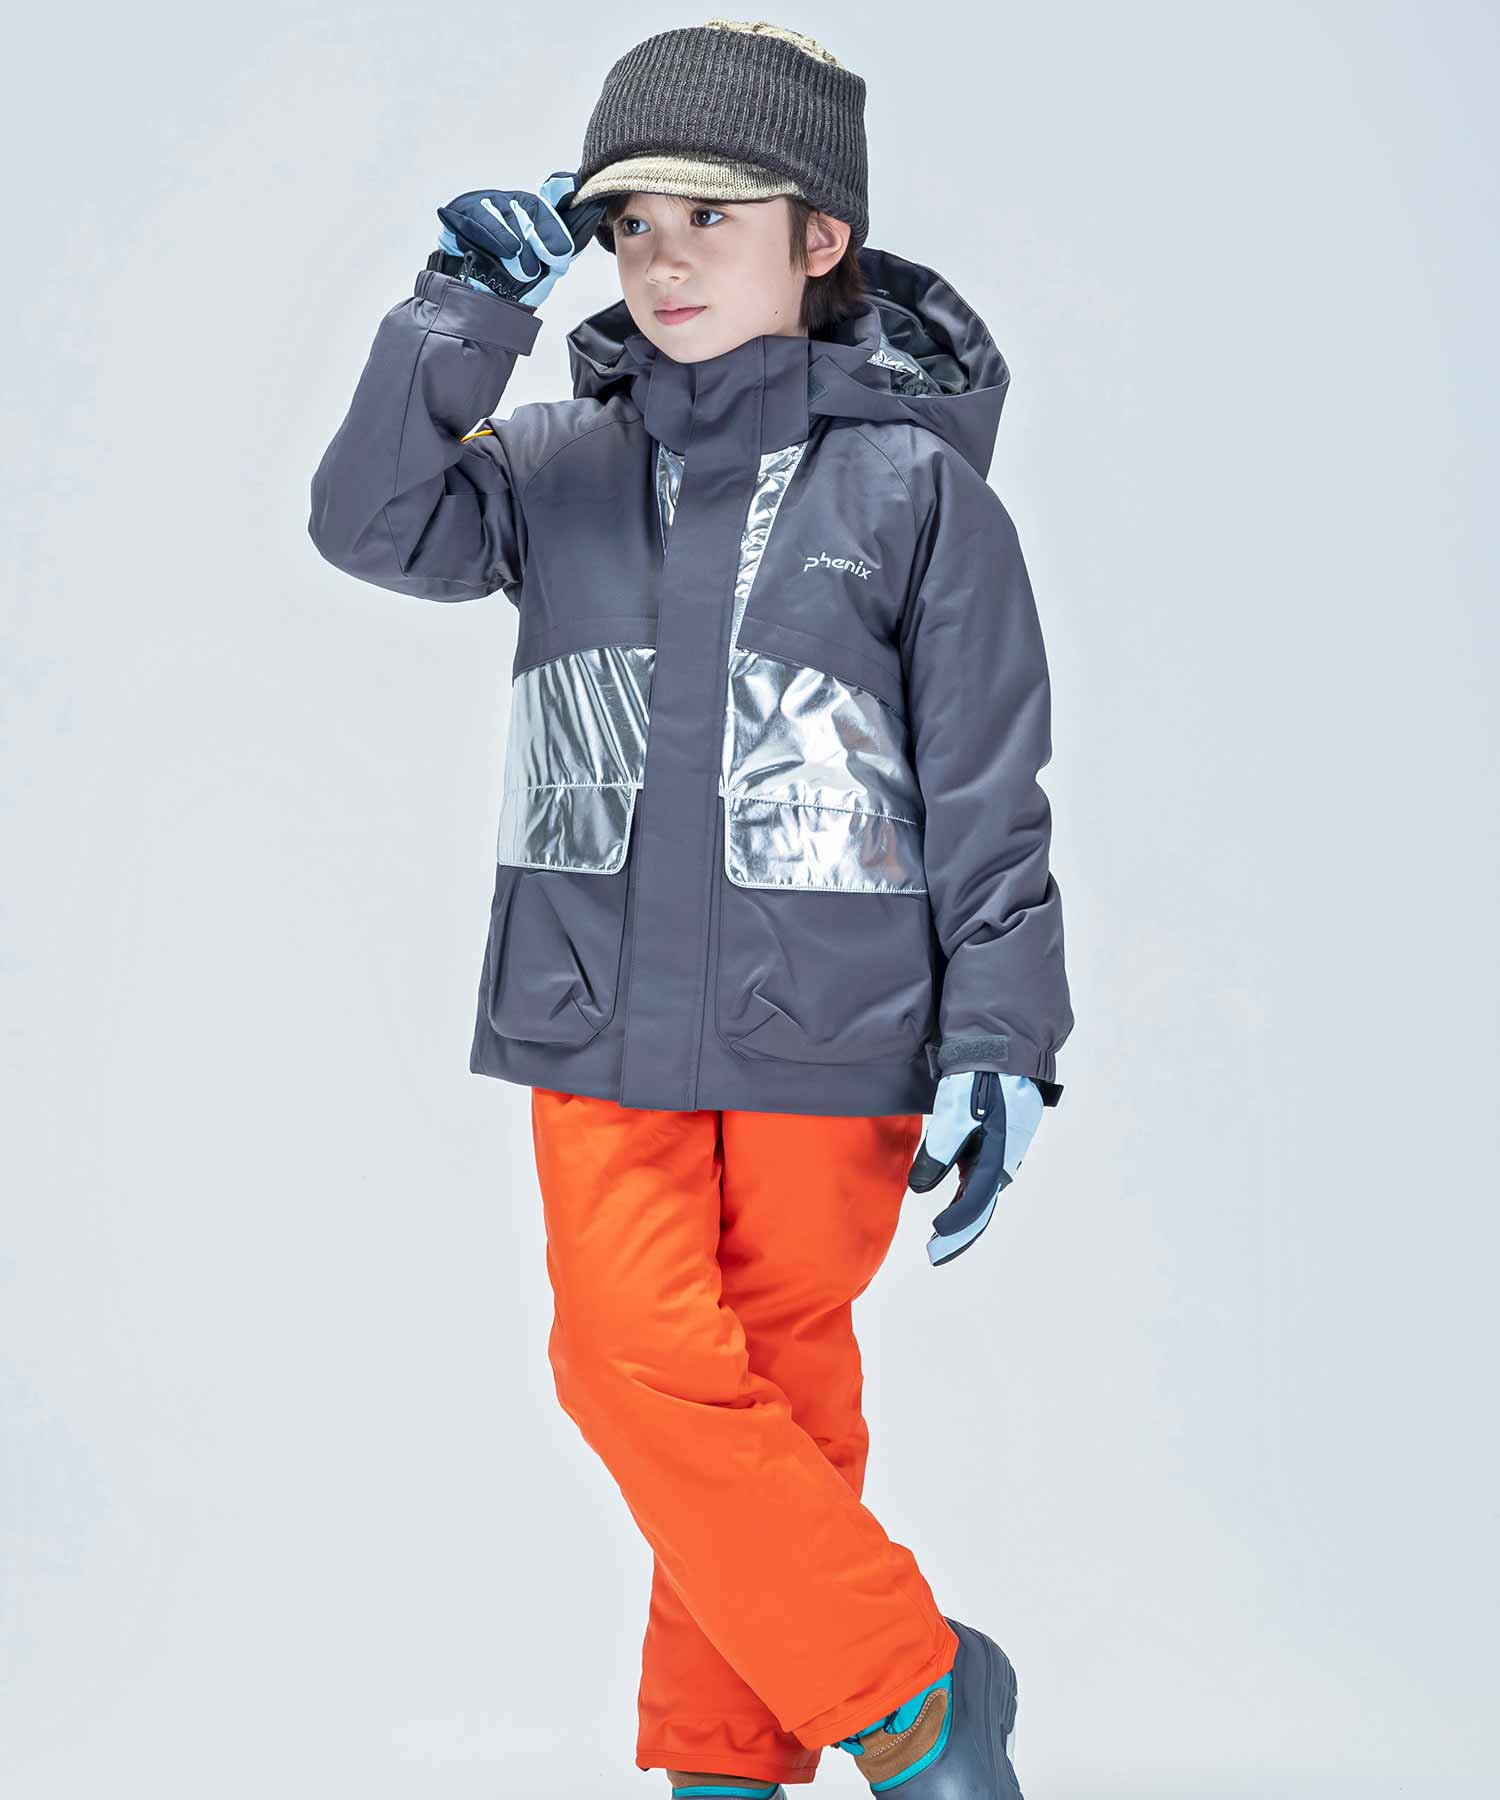 【KIDS/JUNIOR】子供用スキーウェア アウター上下セット ツーピース Snow Jet Junior Two-piece / Jr /phenixスキーウェア23AW新作